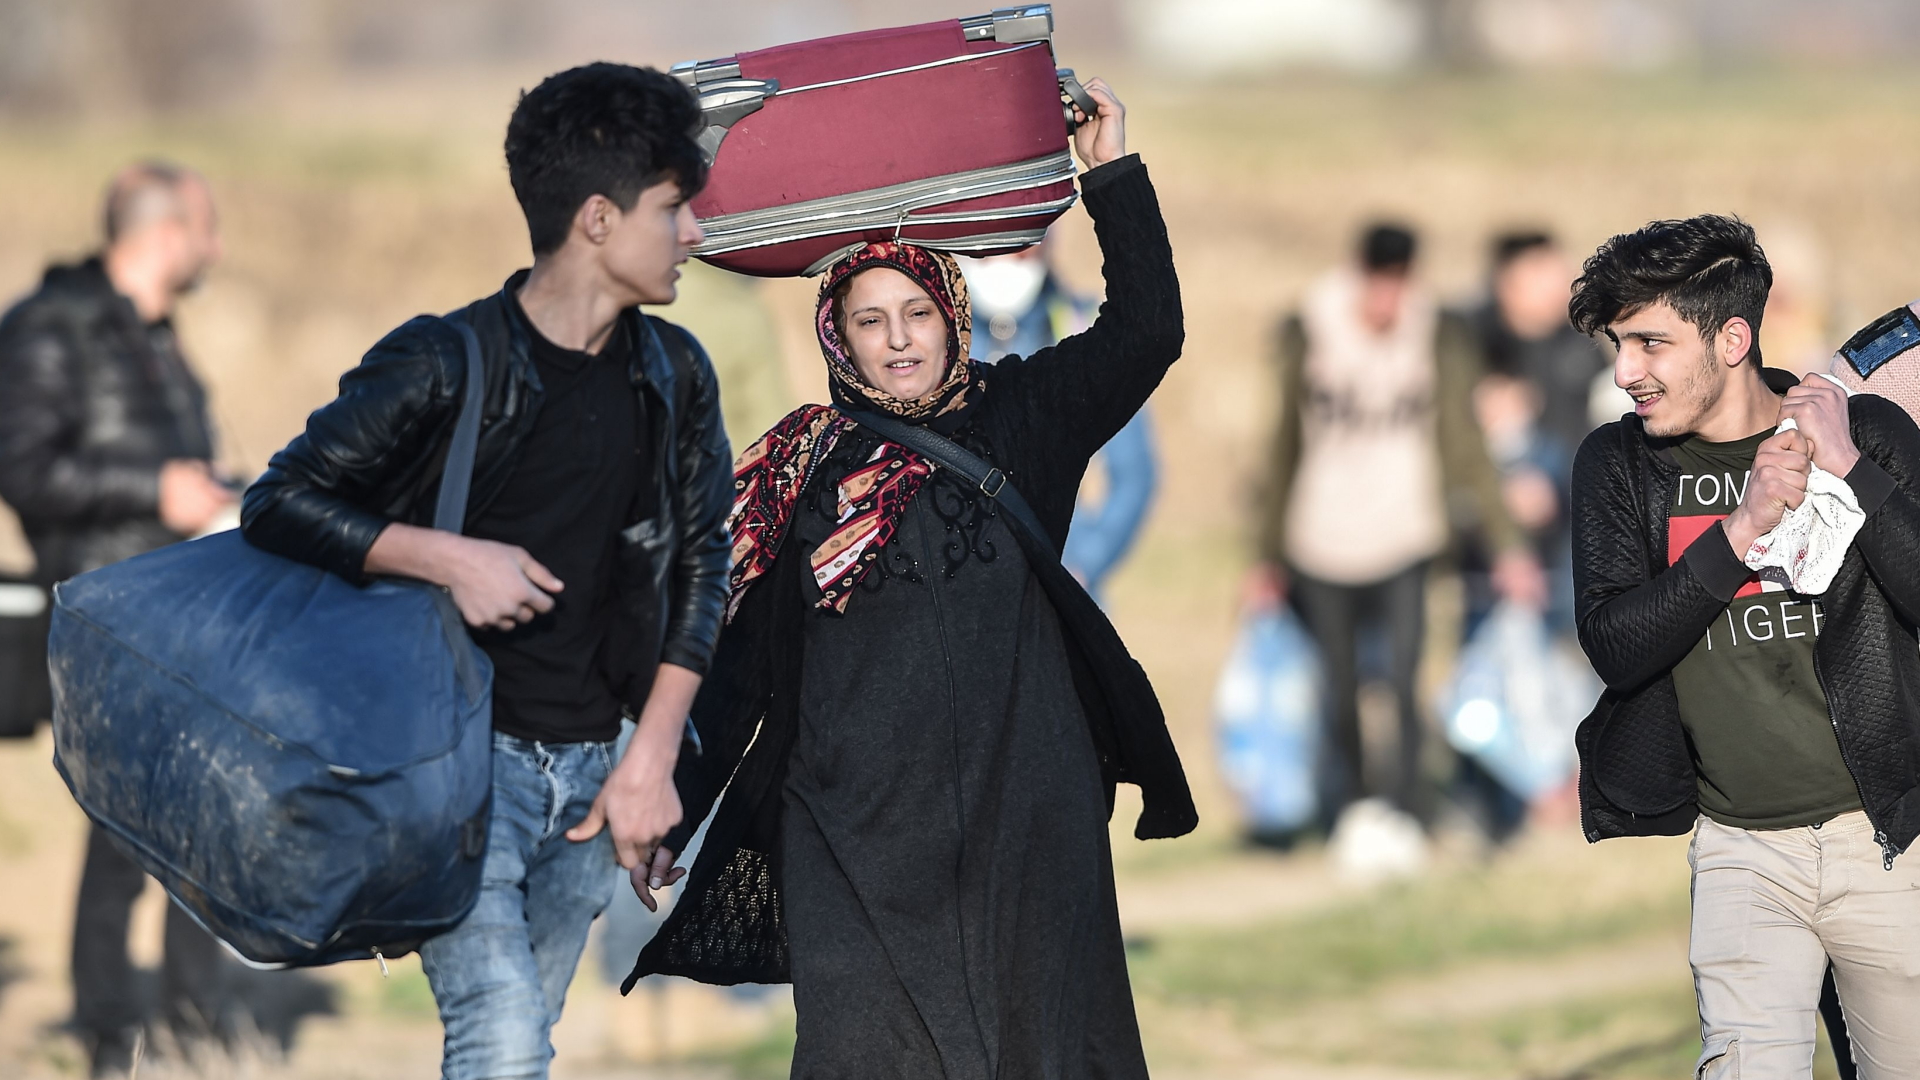 Flüchtlinge laufen im Bezirk Edirne in der Türkei Richtung griechischer Grenze. | AFP